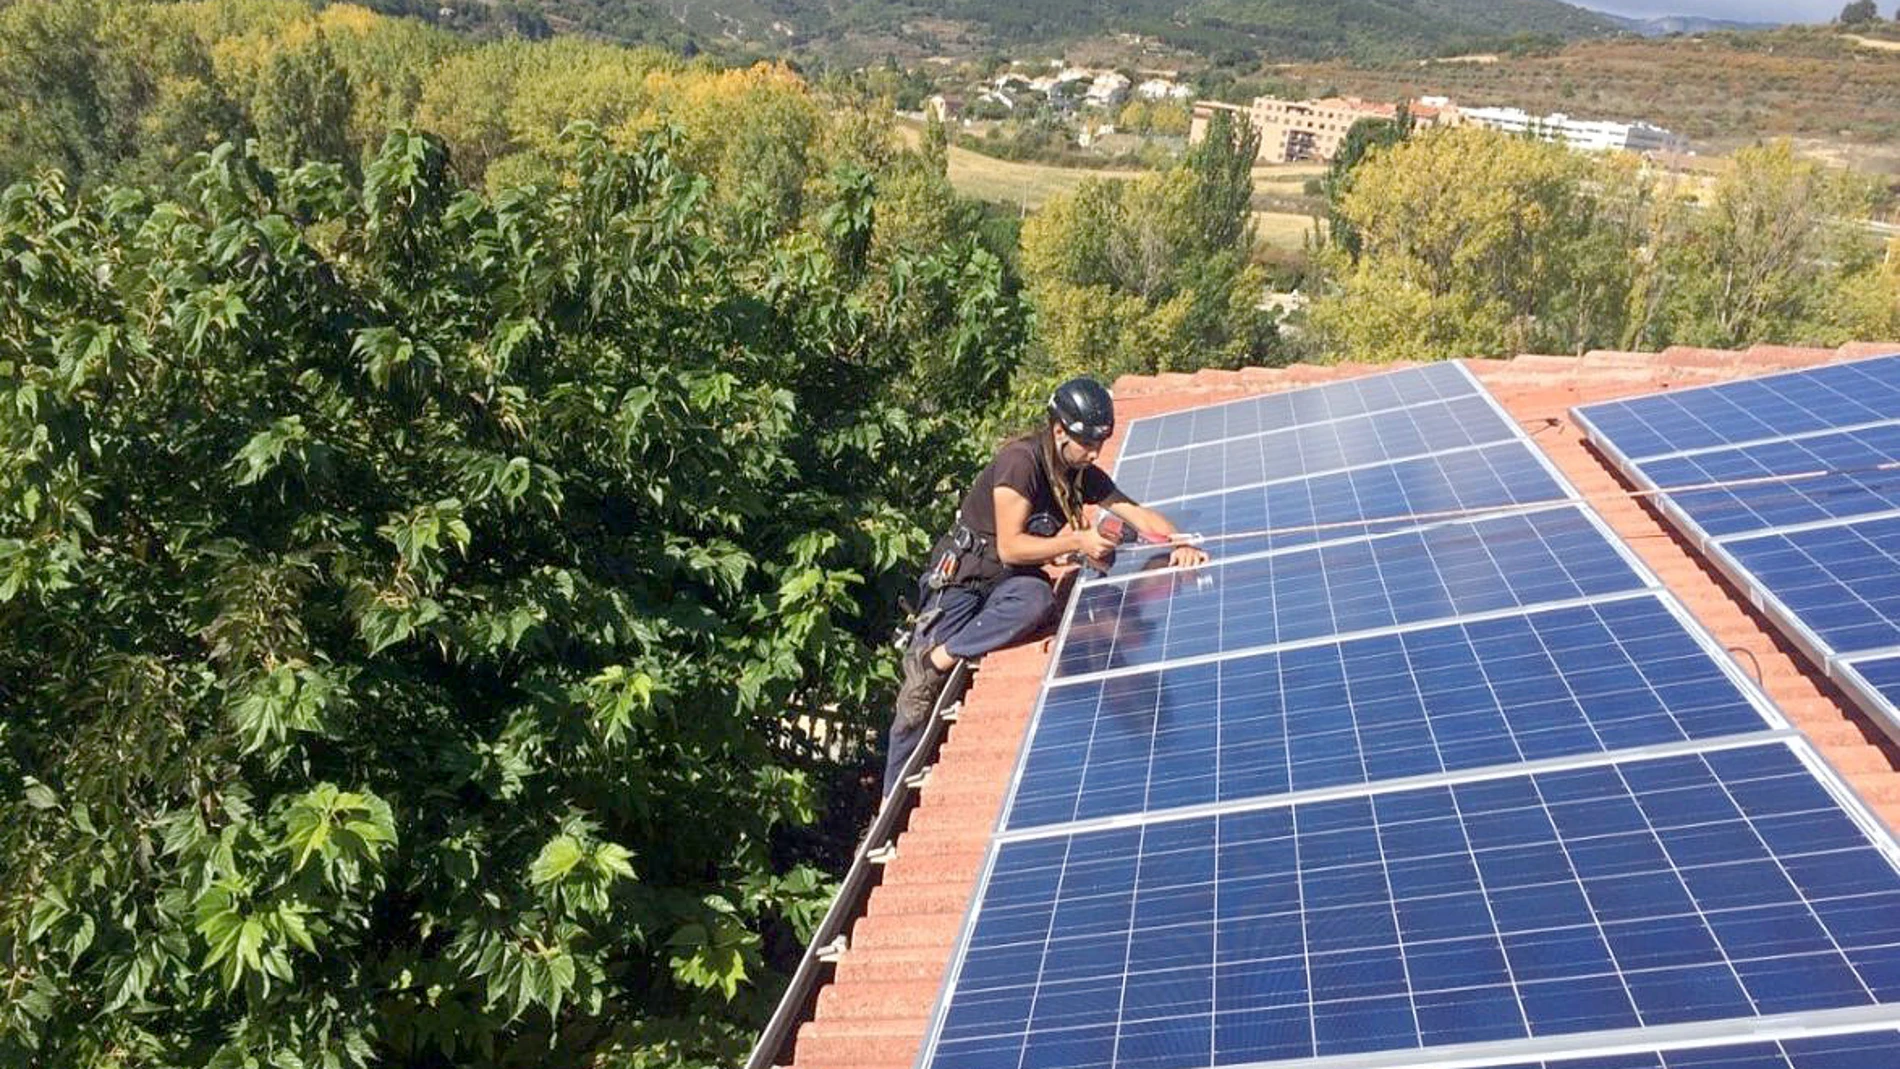 Instalación fotovoltaica en Castilla y León